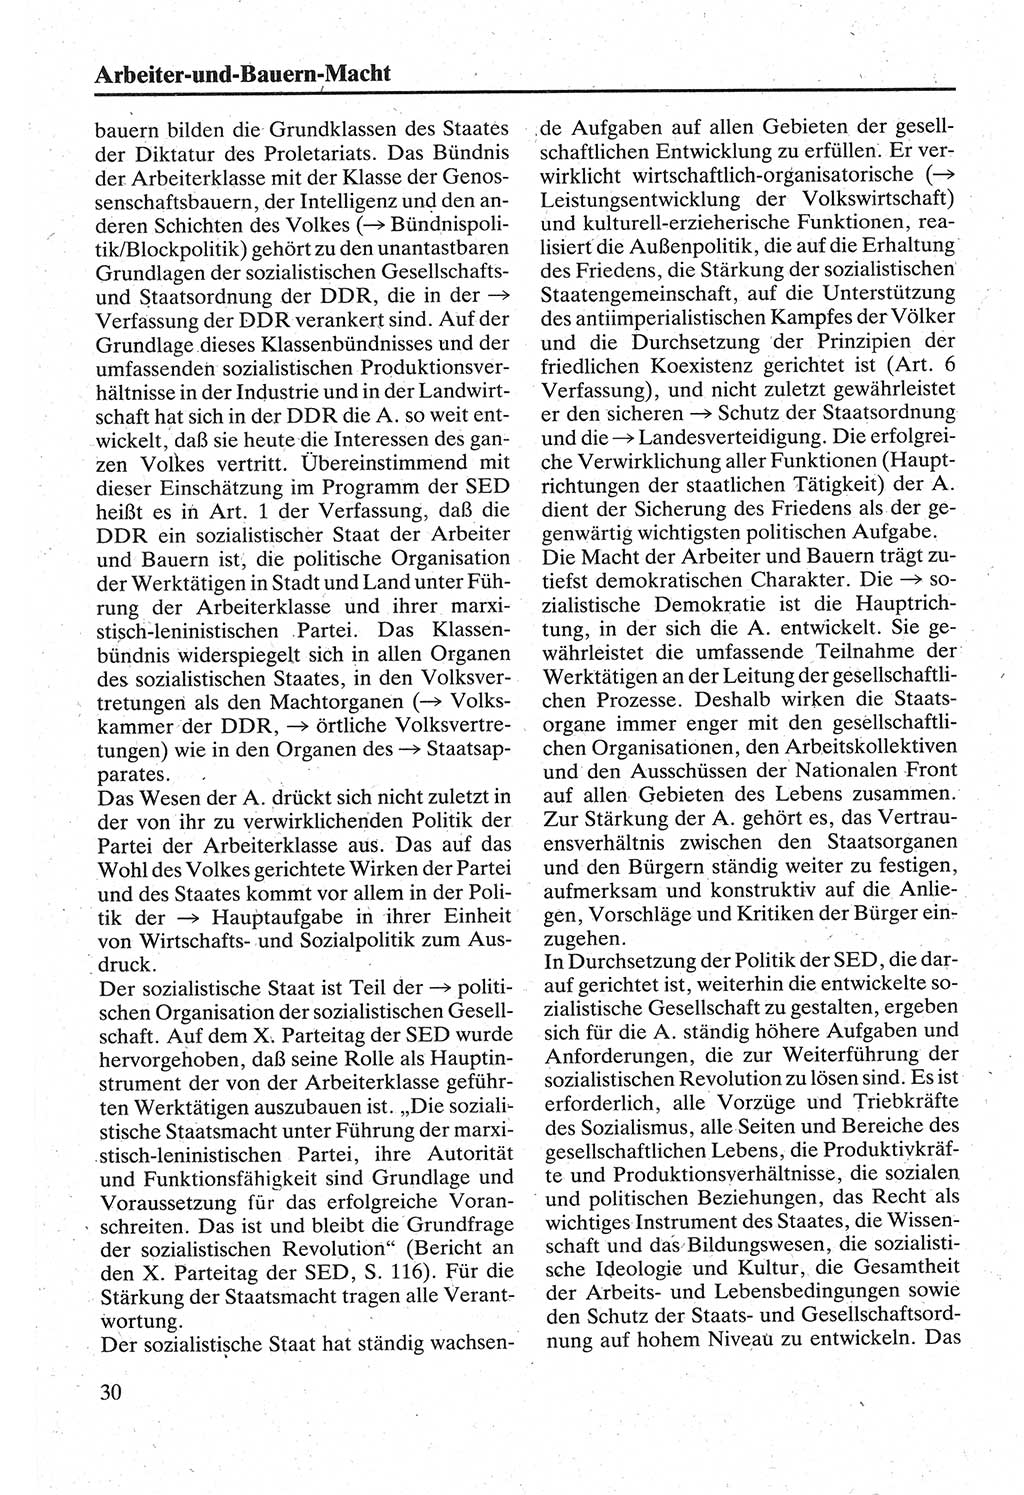 Handbuch für den Abgeordneten [Deutsche Demokratische Republik (DDR)] 1984, Seite 30 (Hb. Abg. DDR 1984, S. 30)